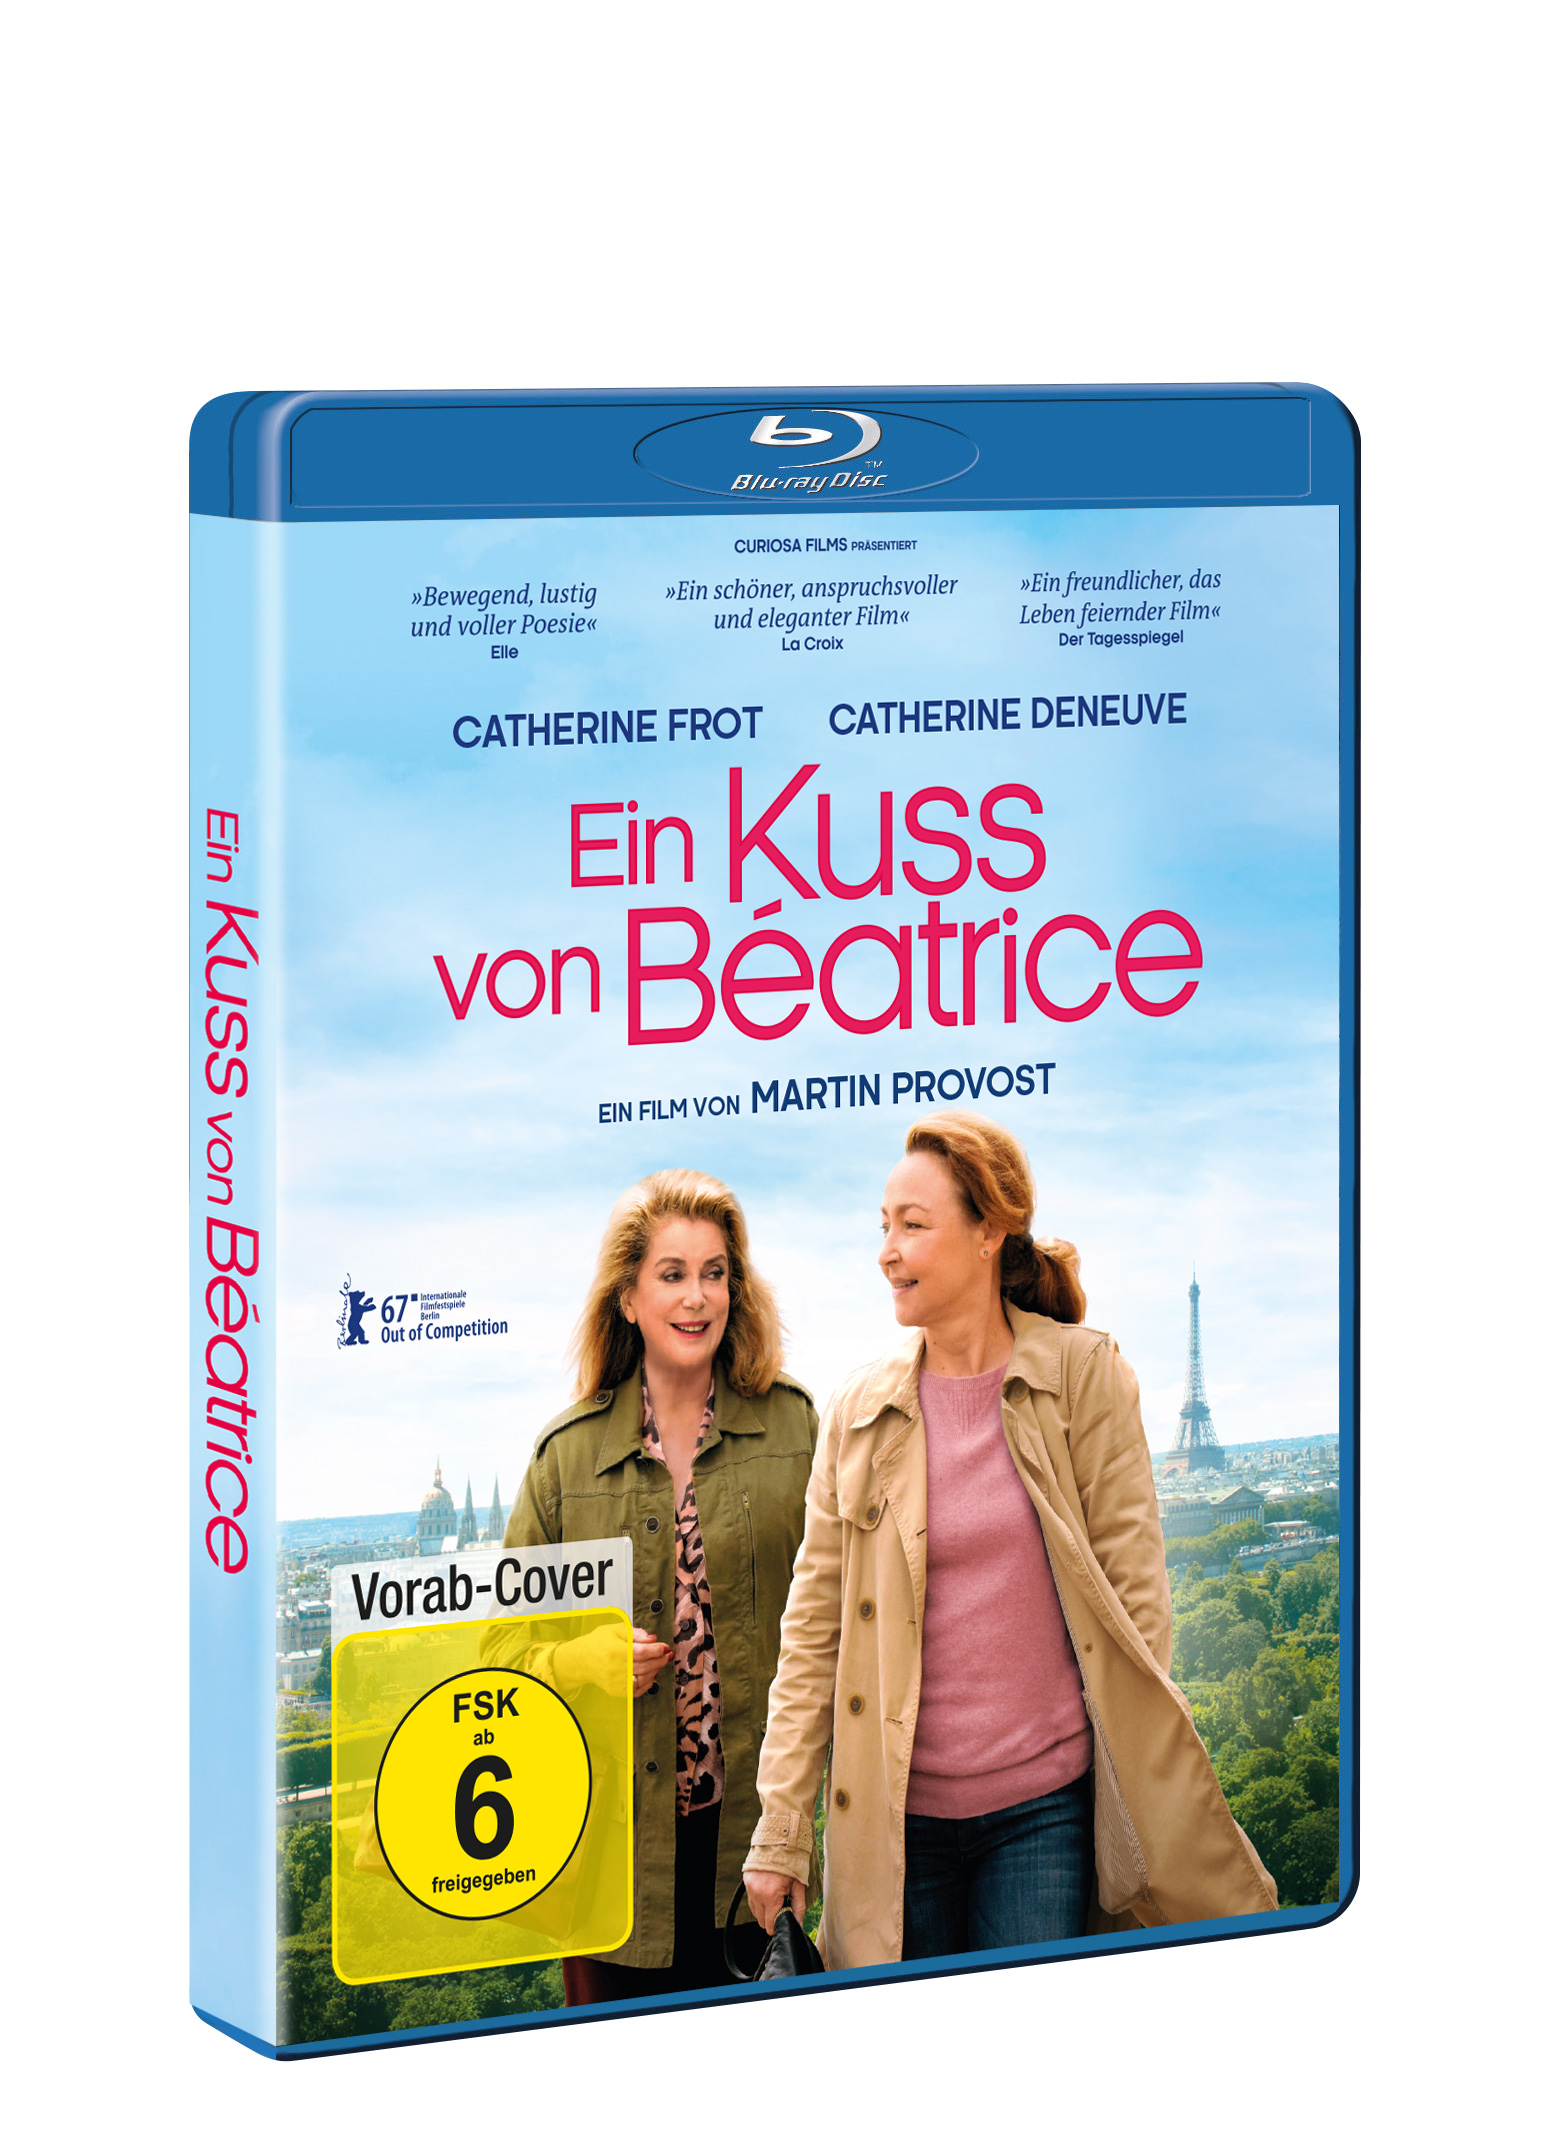 Ein Kuss Beatrice von Blu-ray